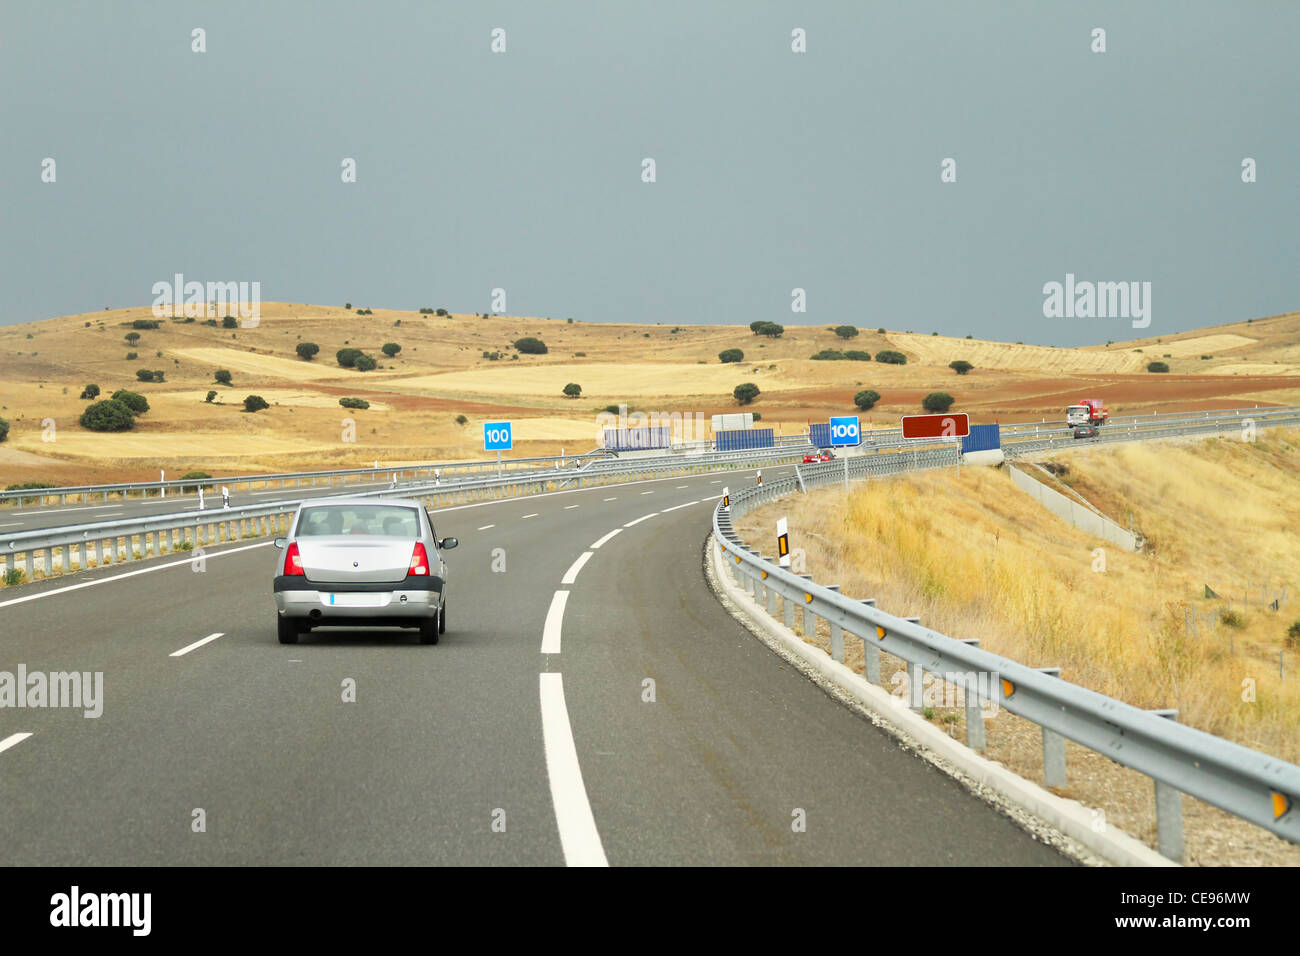 Road scene of several cars in Spain Stock Photo